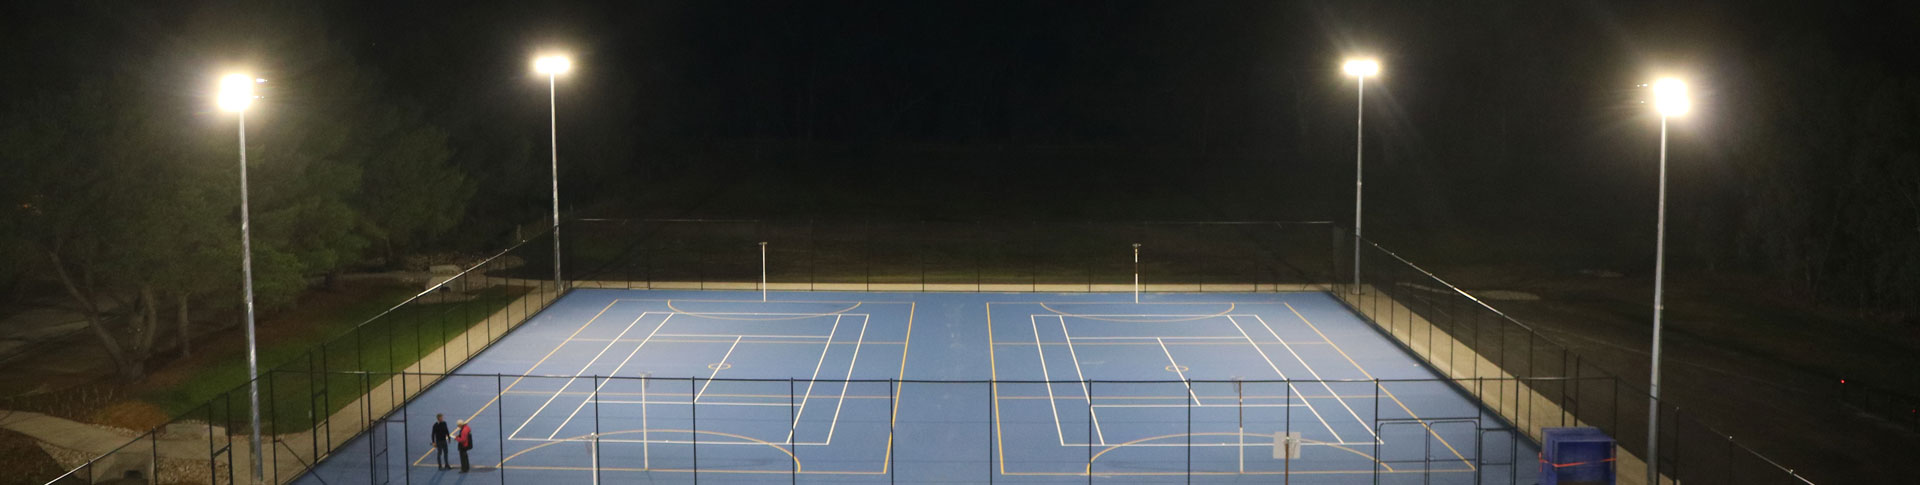 jasstech led lighting of netball court